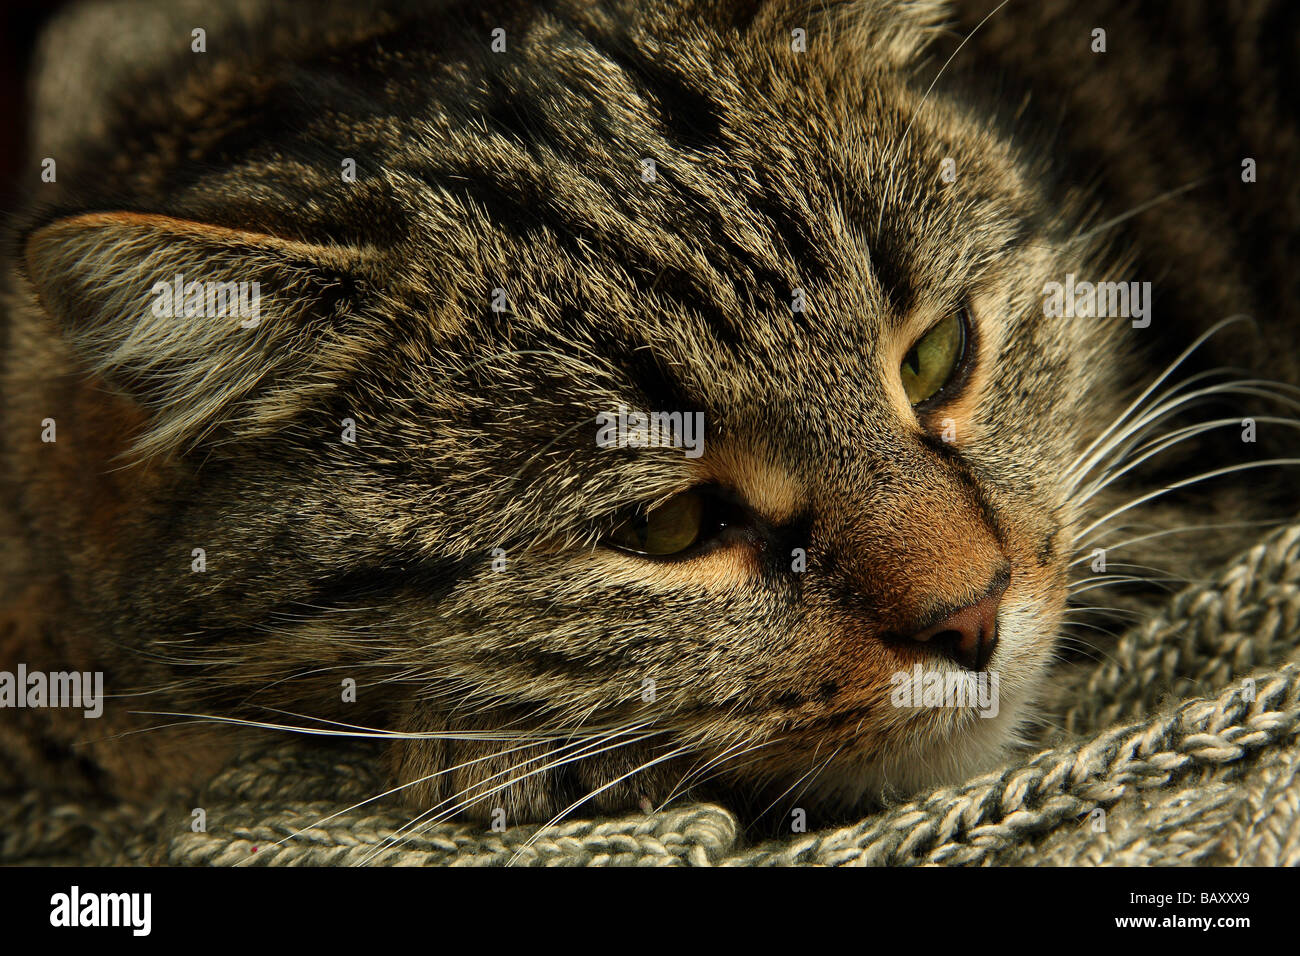 Primer plano de un joven gato atigrado con su cabeza descansando sobre un suéter ojos ligeramente abiertos Foto de stock